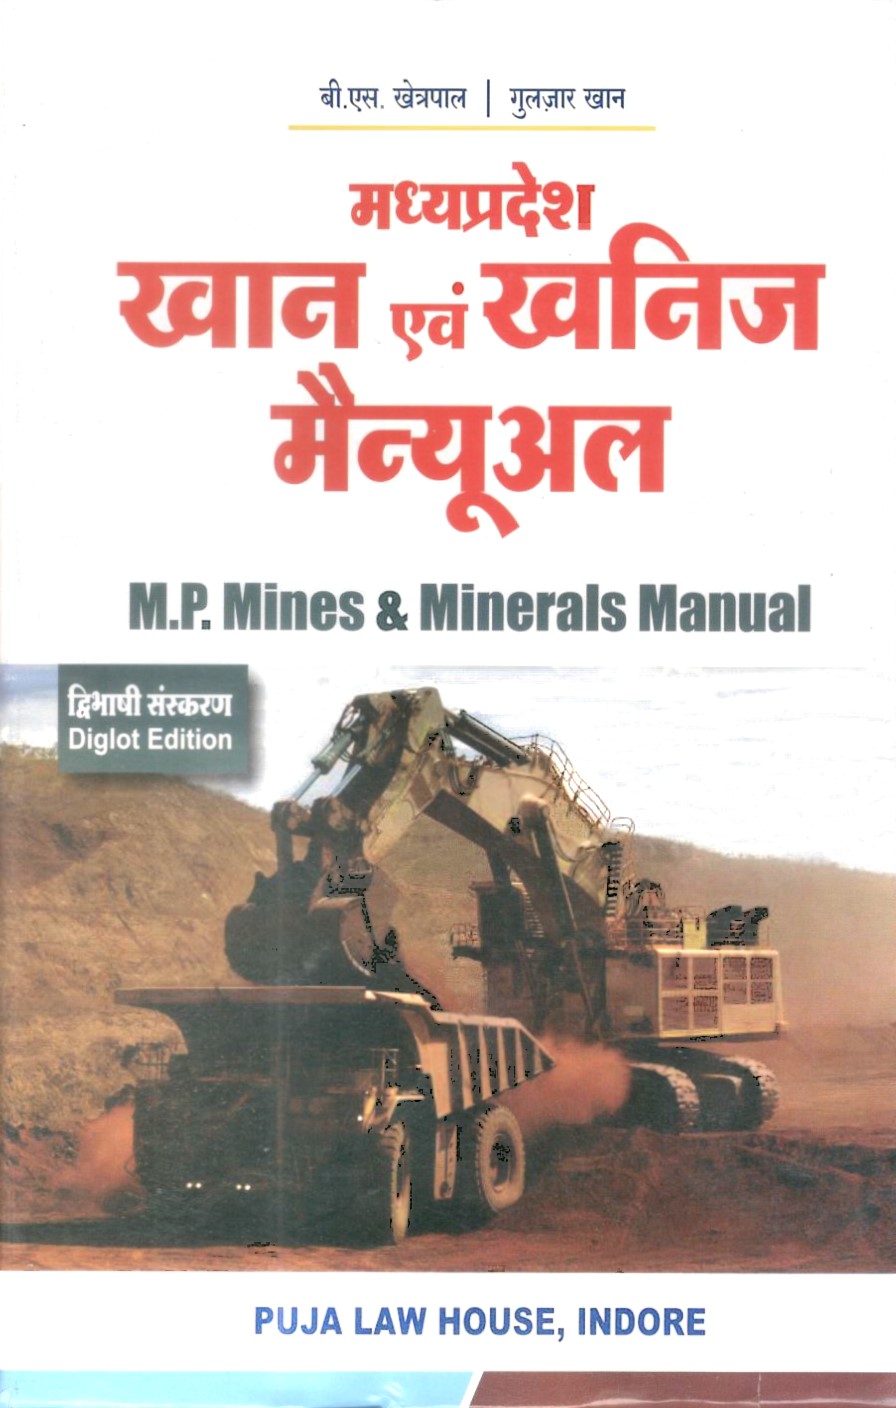 मध्य प्रदेश खान एवं खनिज मैन्युअल / Madhya Pradesh Mines and Minerals Manual